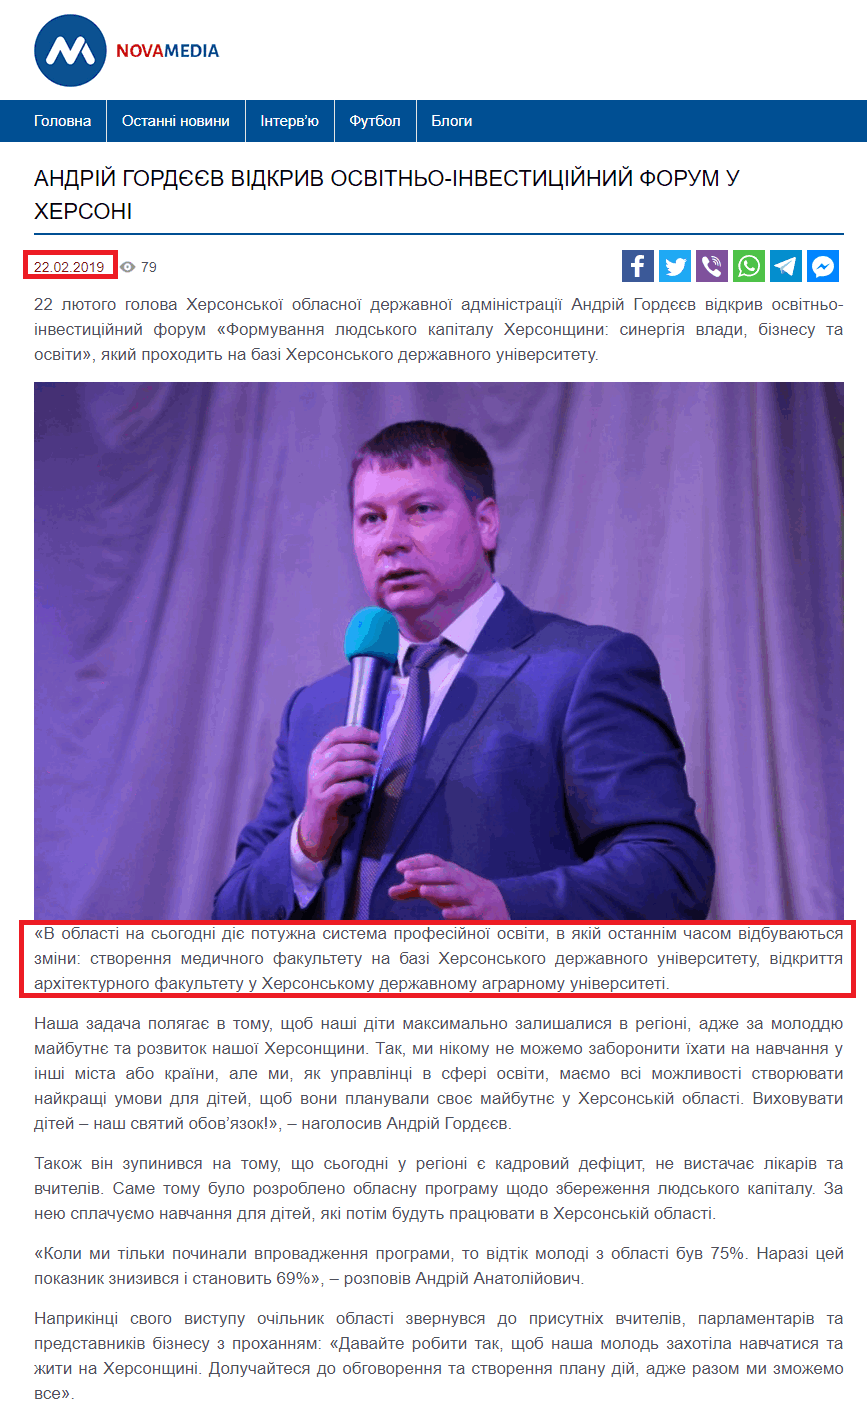 https://medianova.com.ua/andriy-gordyeyev-vidkriv-osvitno-investitsiyniy-forum-u-hersoni/